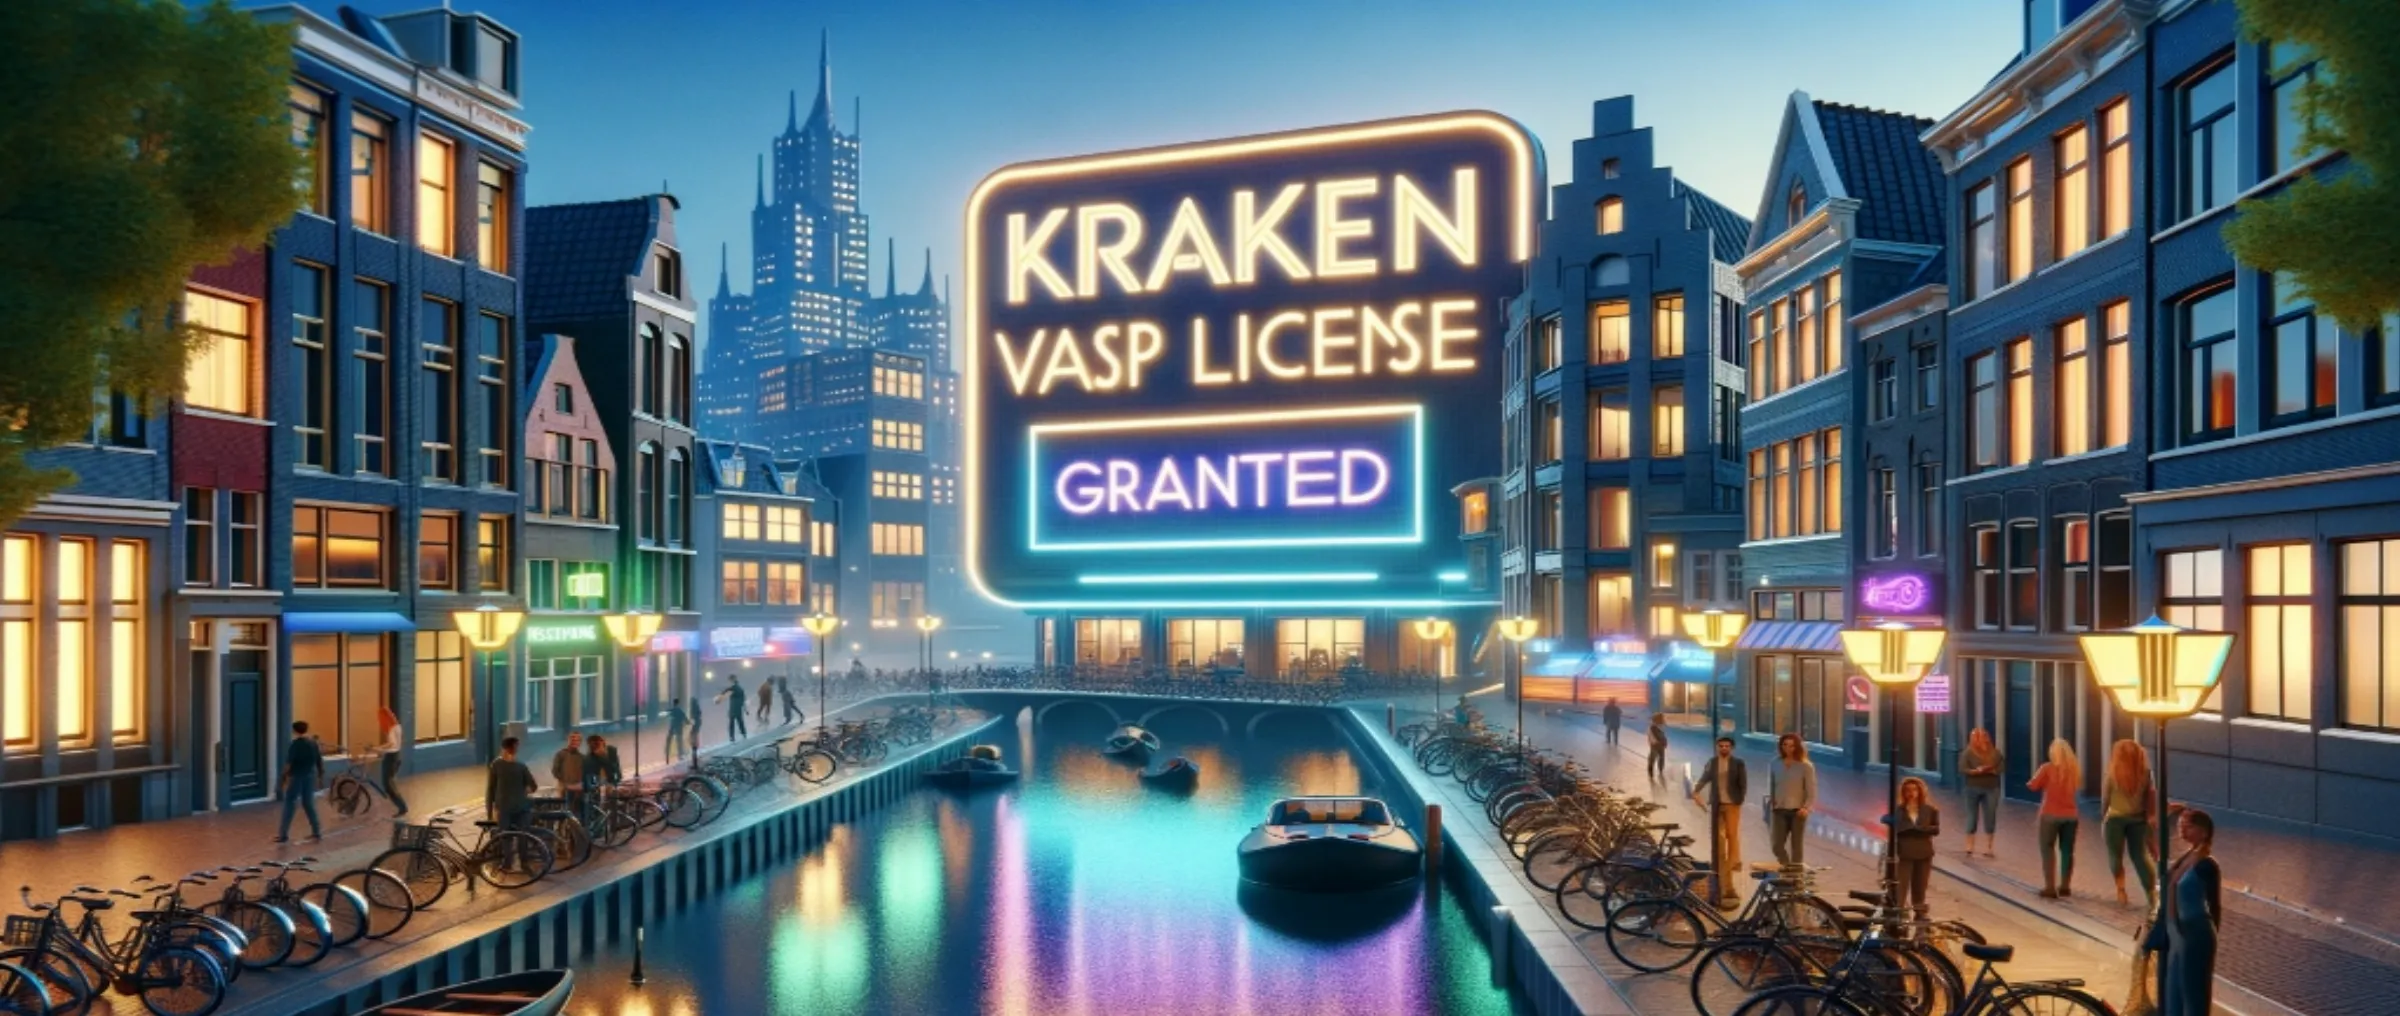 Kraken получила разрешение на деятельность VASP в Нидерландах